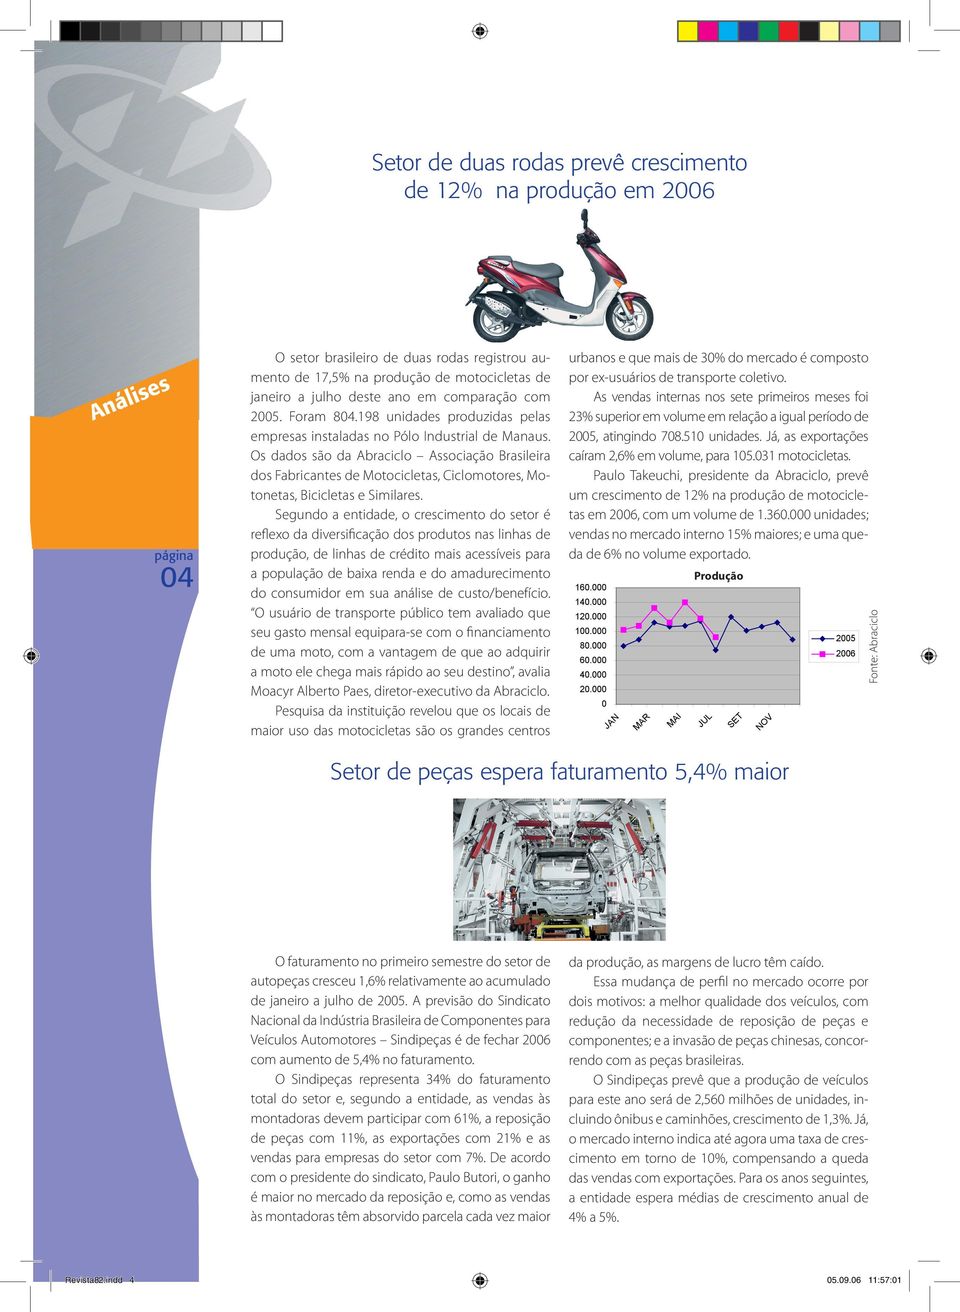 Os dados são da Abraciclo Associação Brasileira dos Fabricantes de Motocicletas, Ciclomotores, Motonetas, Bicicletas e Similares.